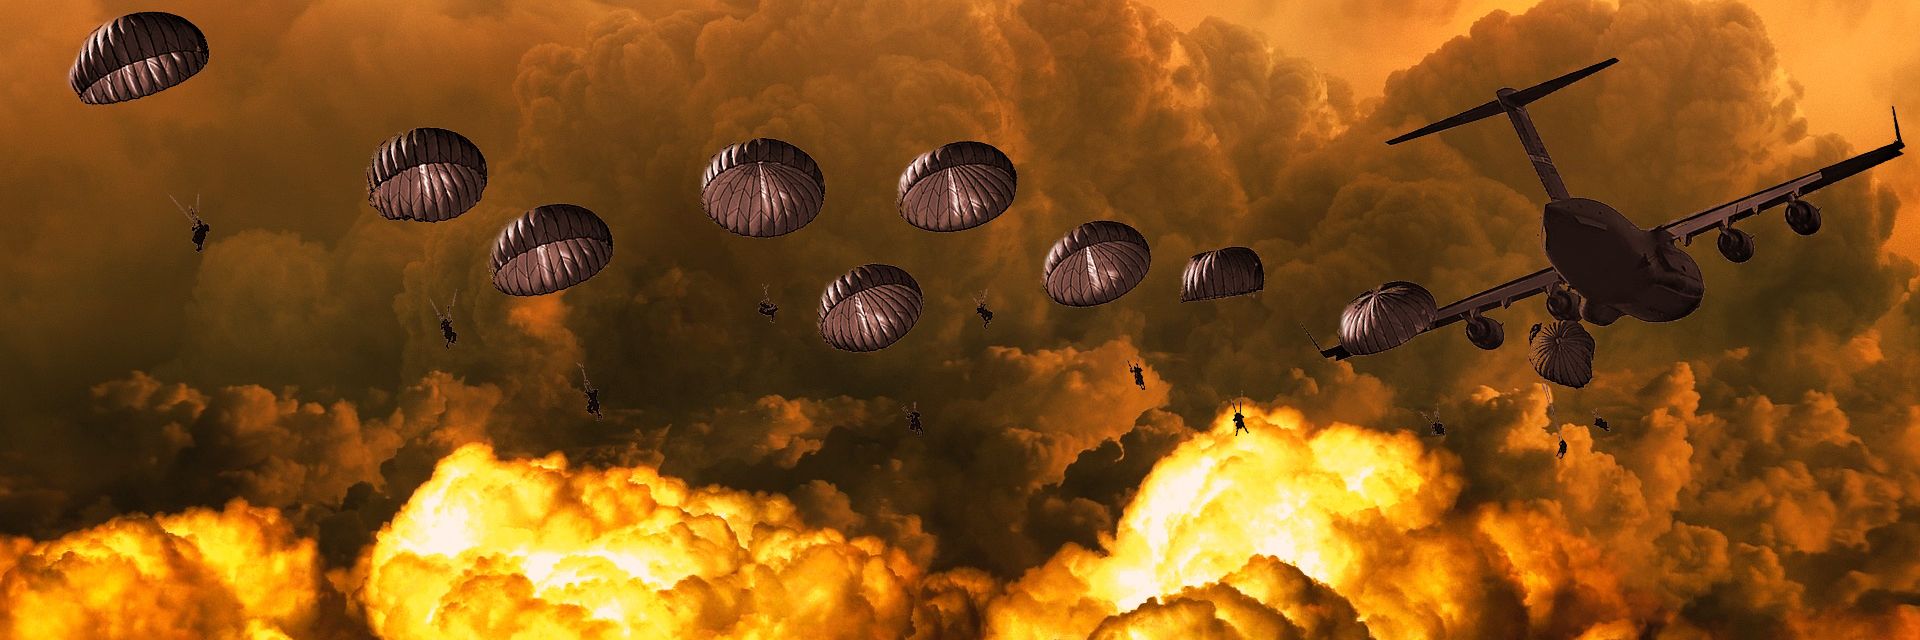 Wojskowi spadochroniarze nad terenem eksplozji - kolaż